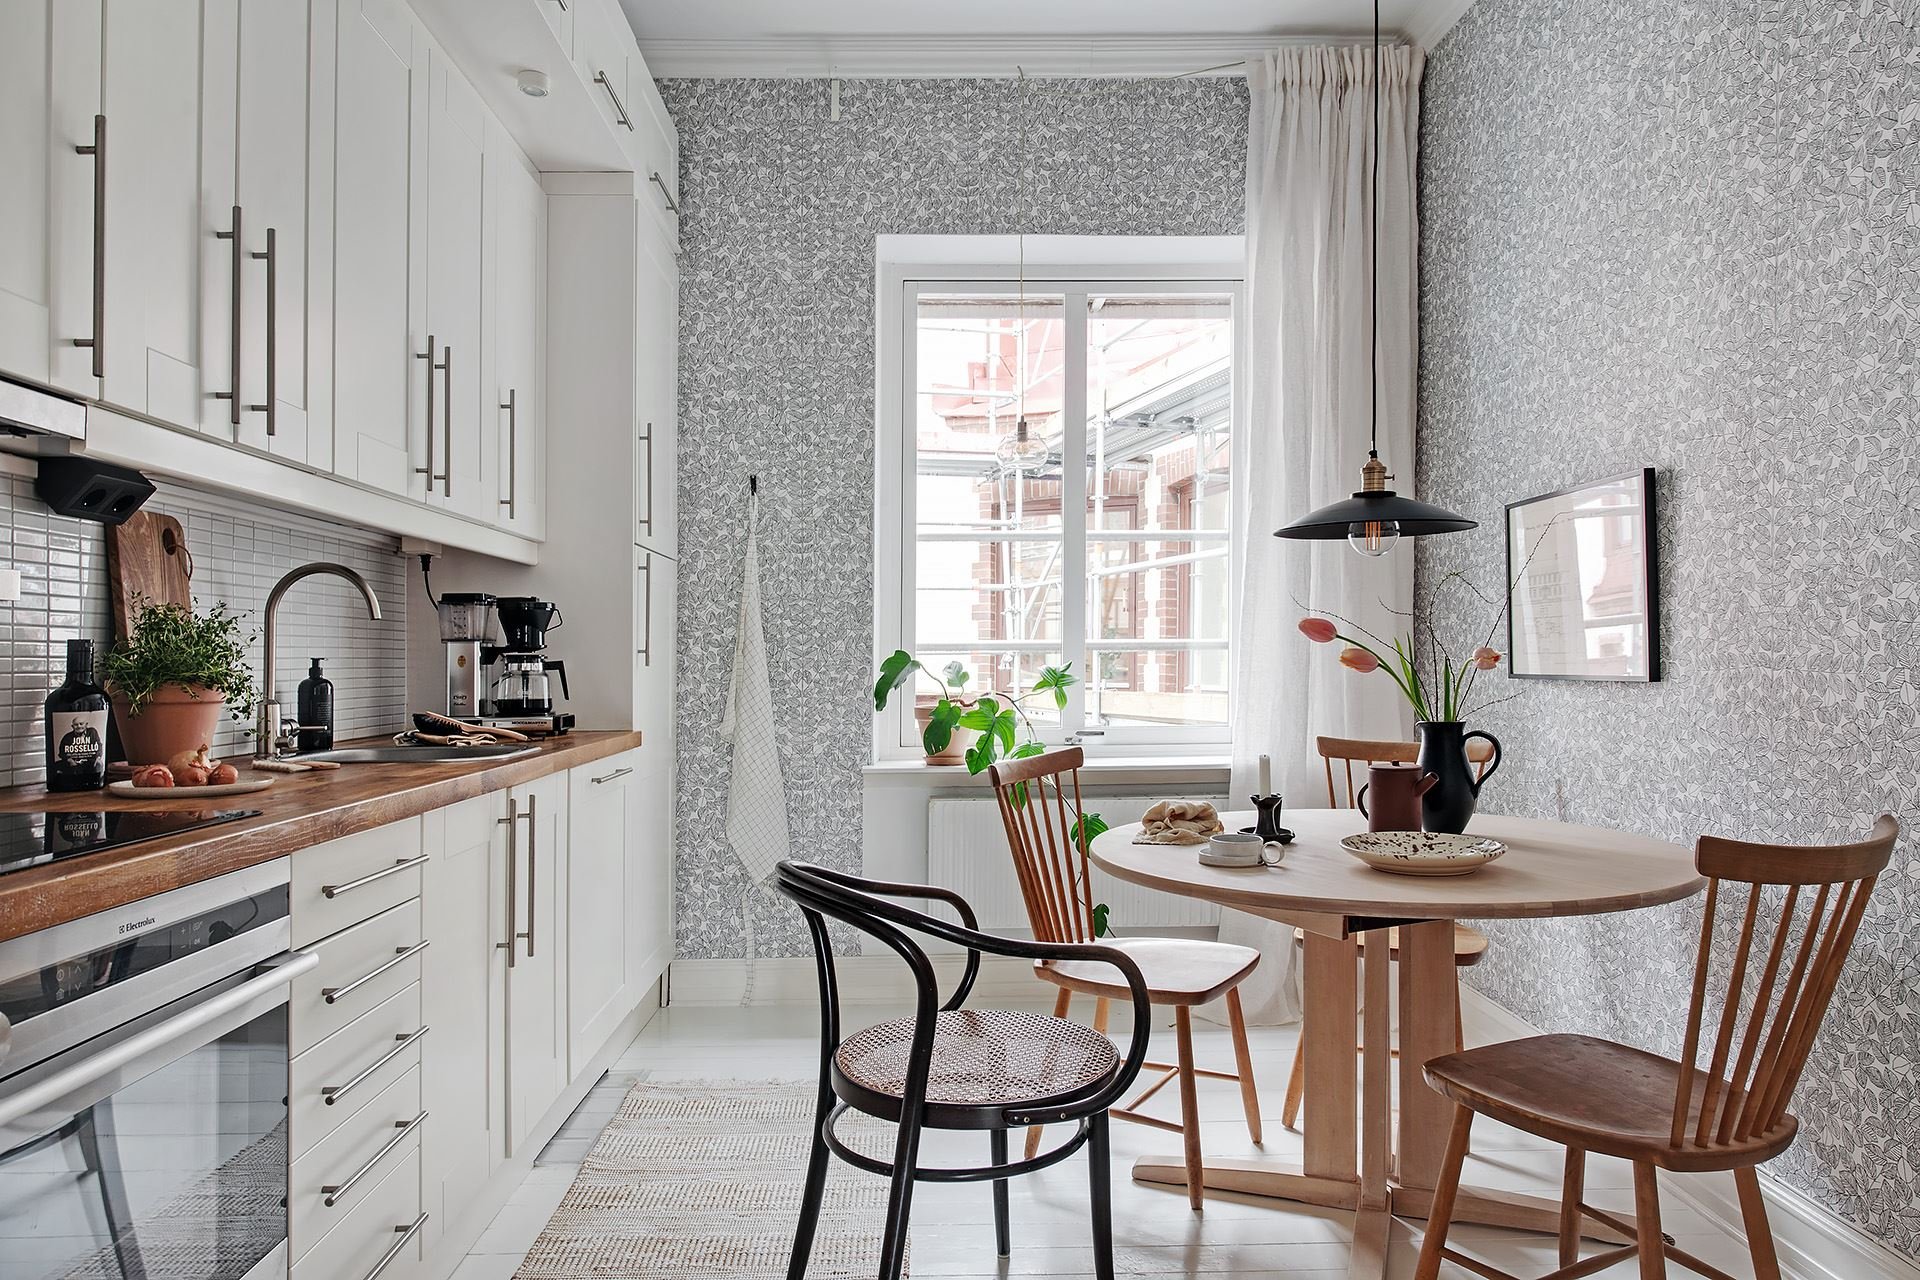 Кухня в скандинавском стиле с обоями в цветочек